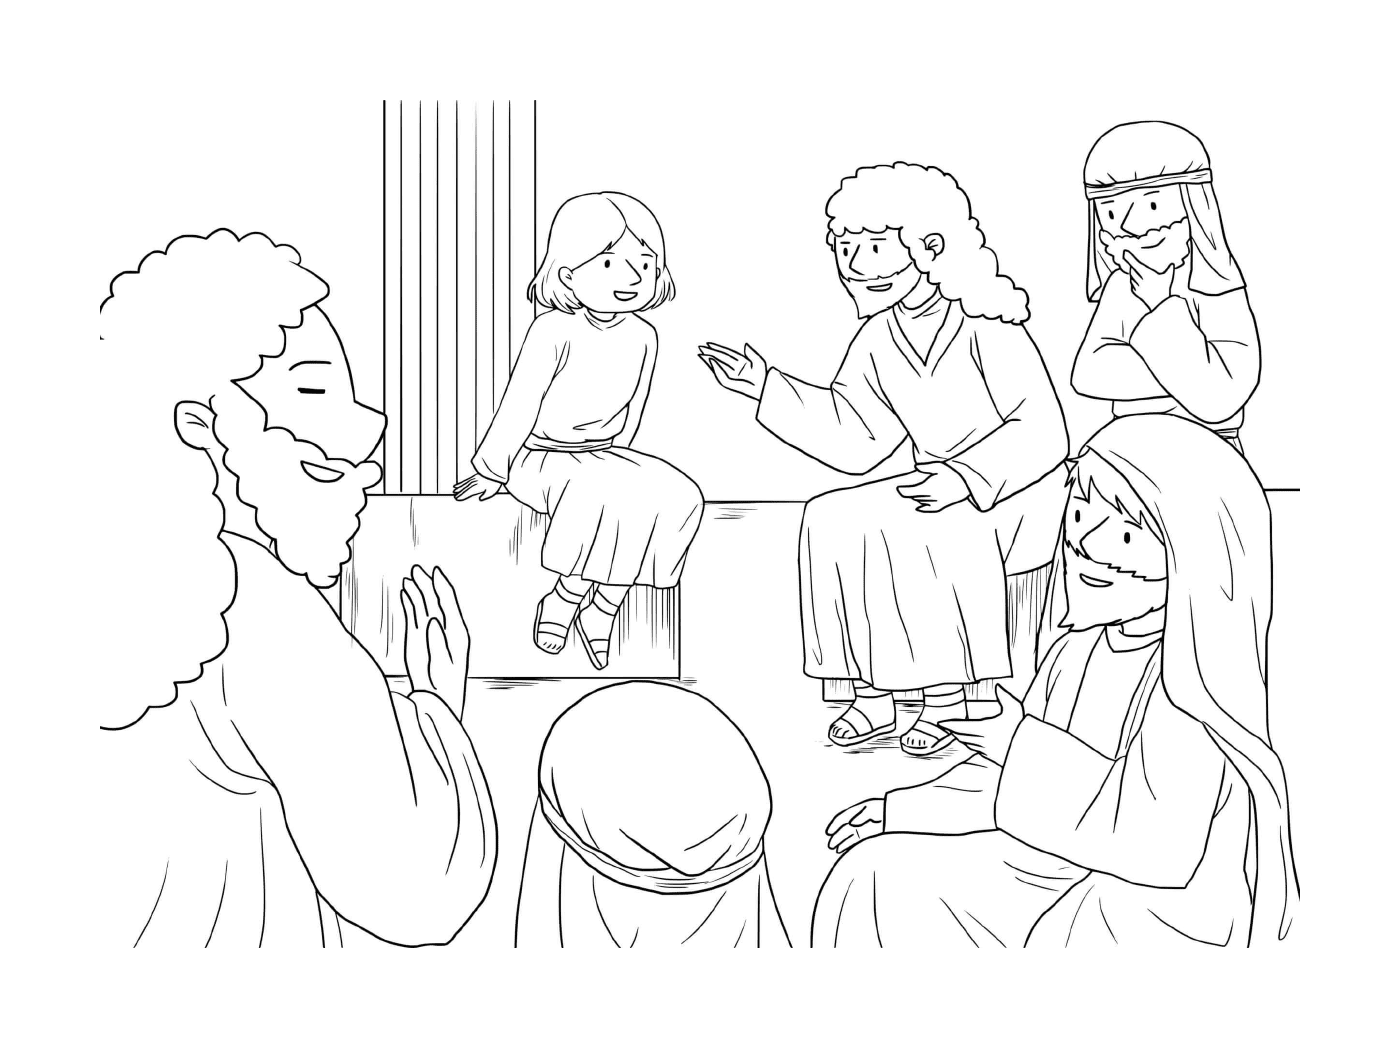  Grupo de personas reunidas alrededor de una mujer 